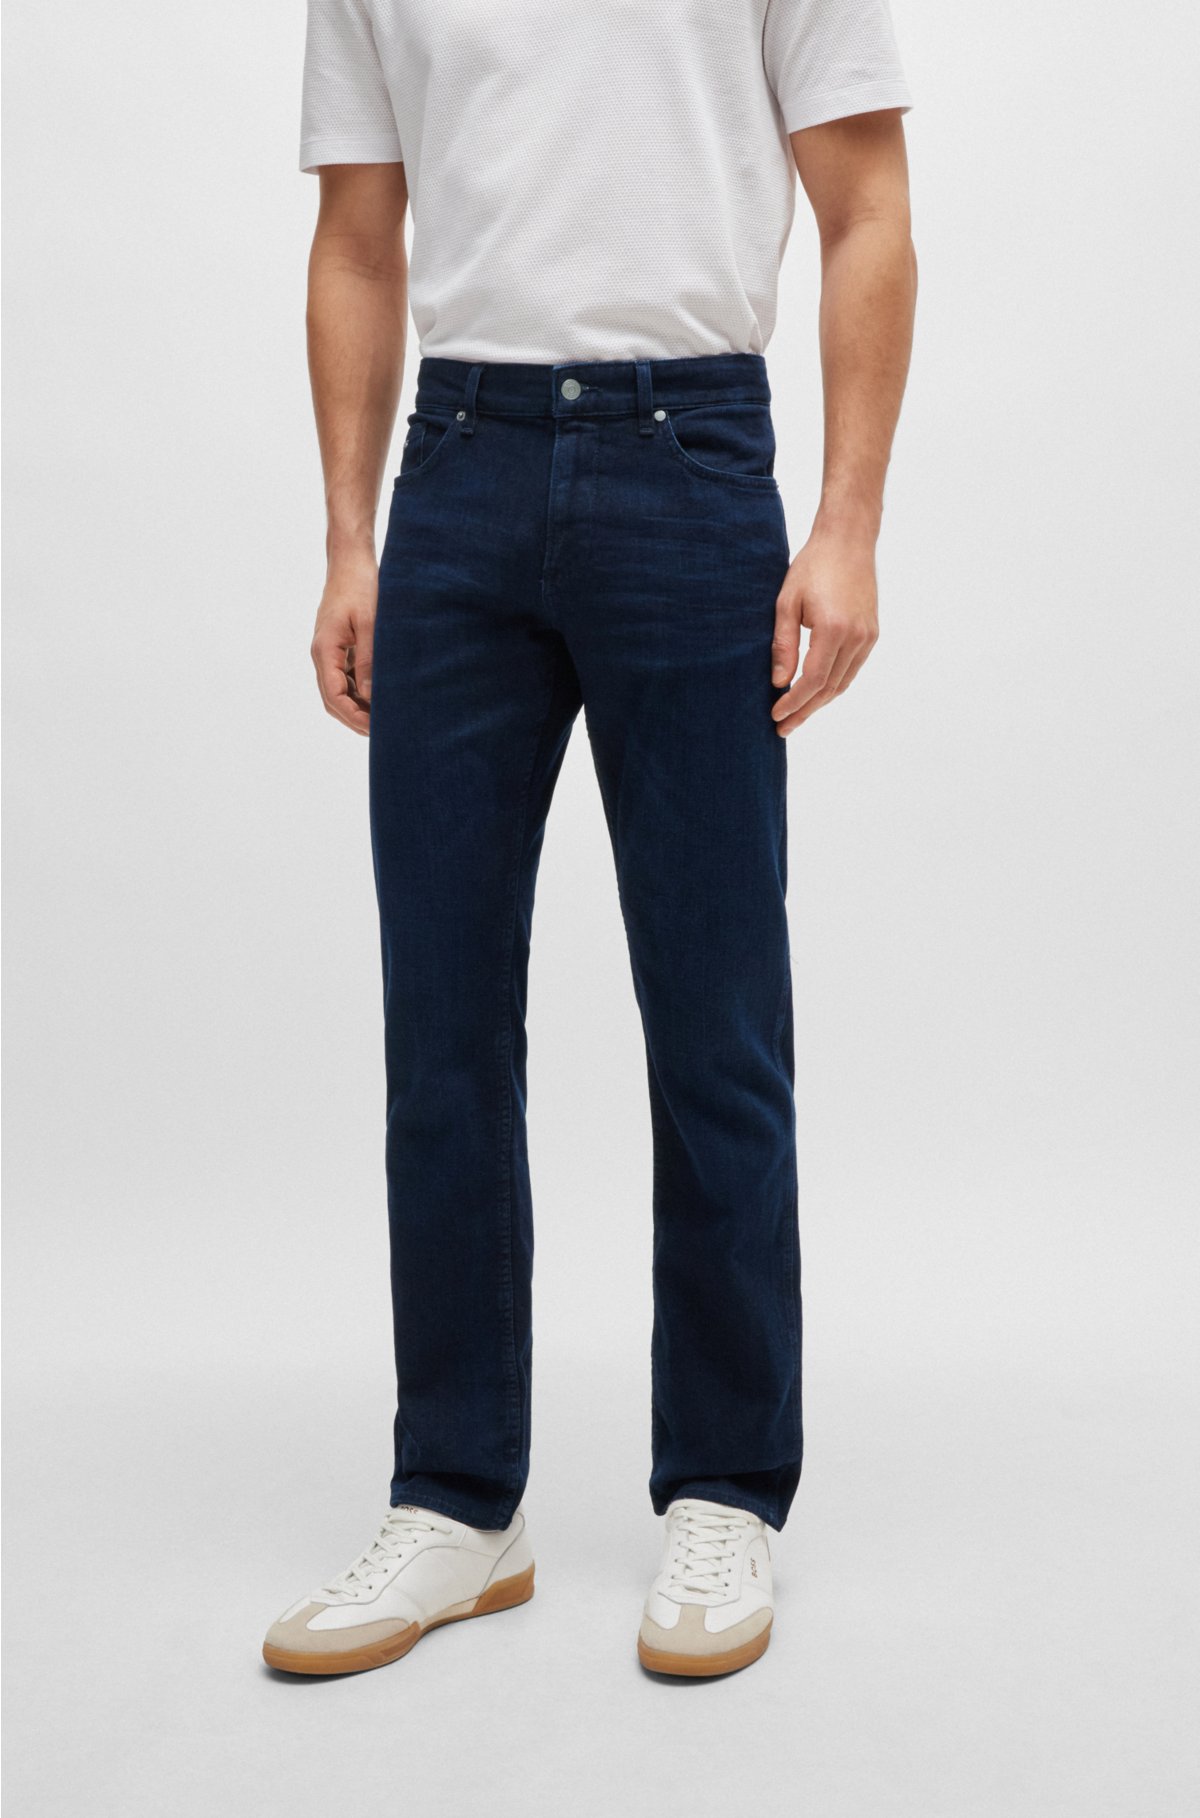 - Mørkeblå slim fit jeans i superblød italiensk denim